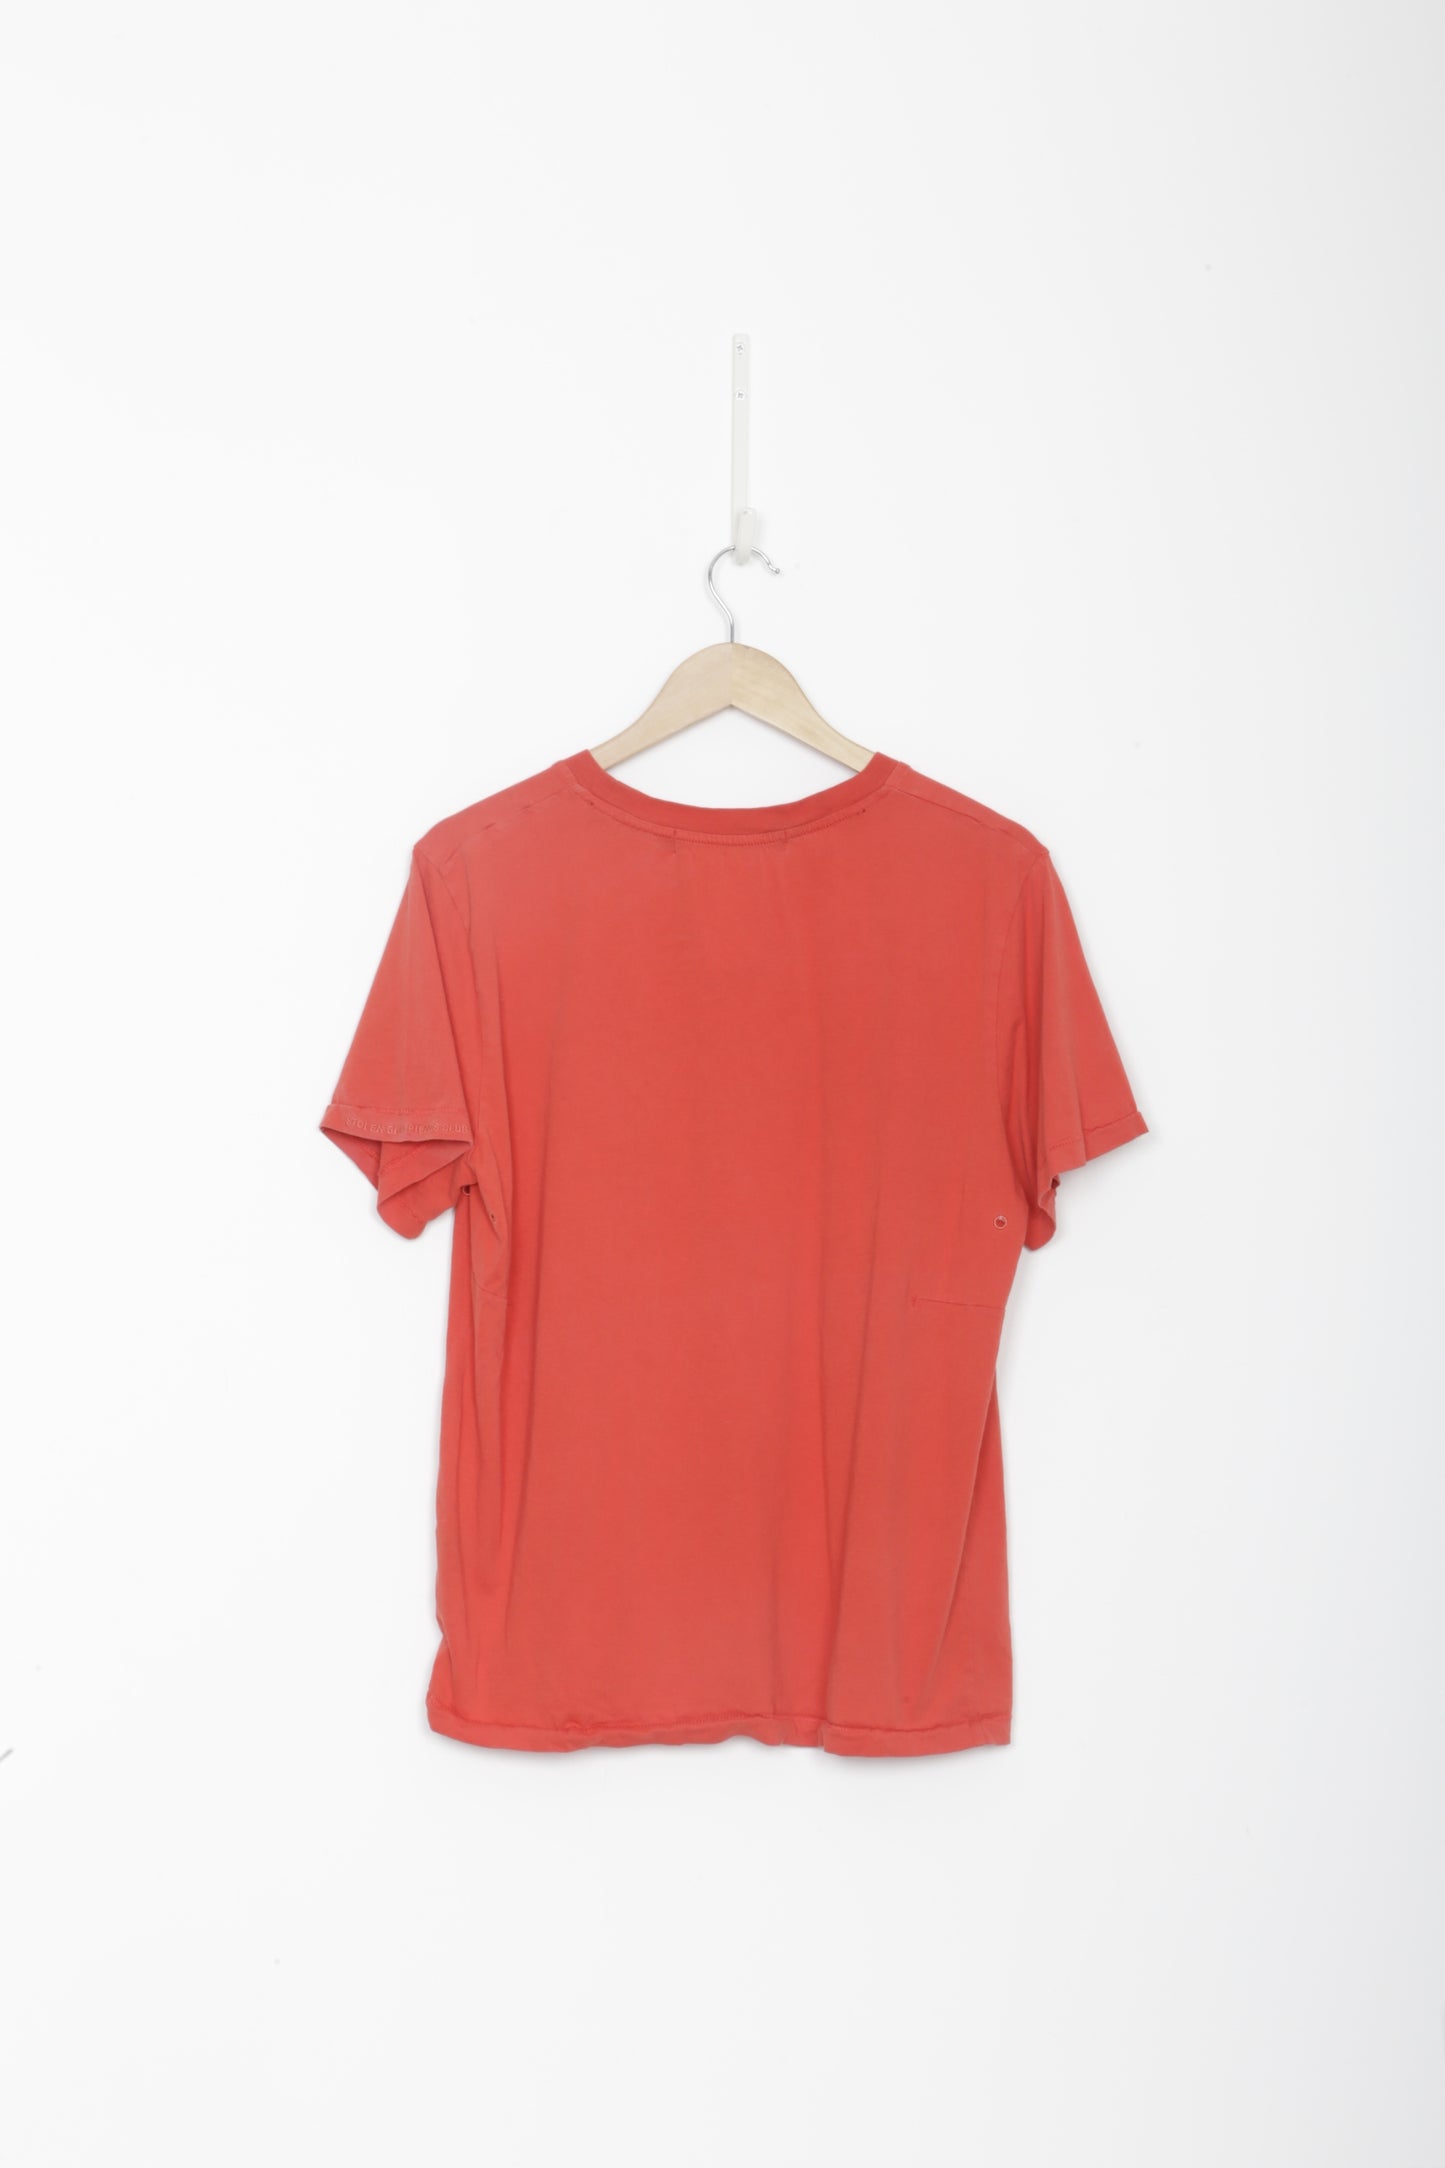 Stolen Girlfriends Club Womens Red T-shirt Size S